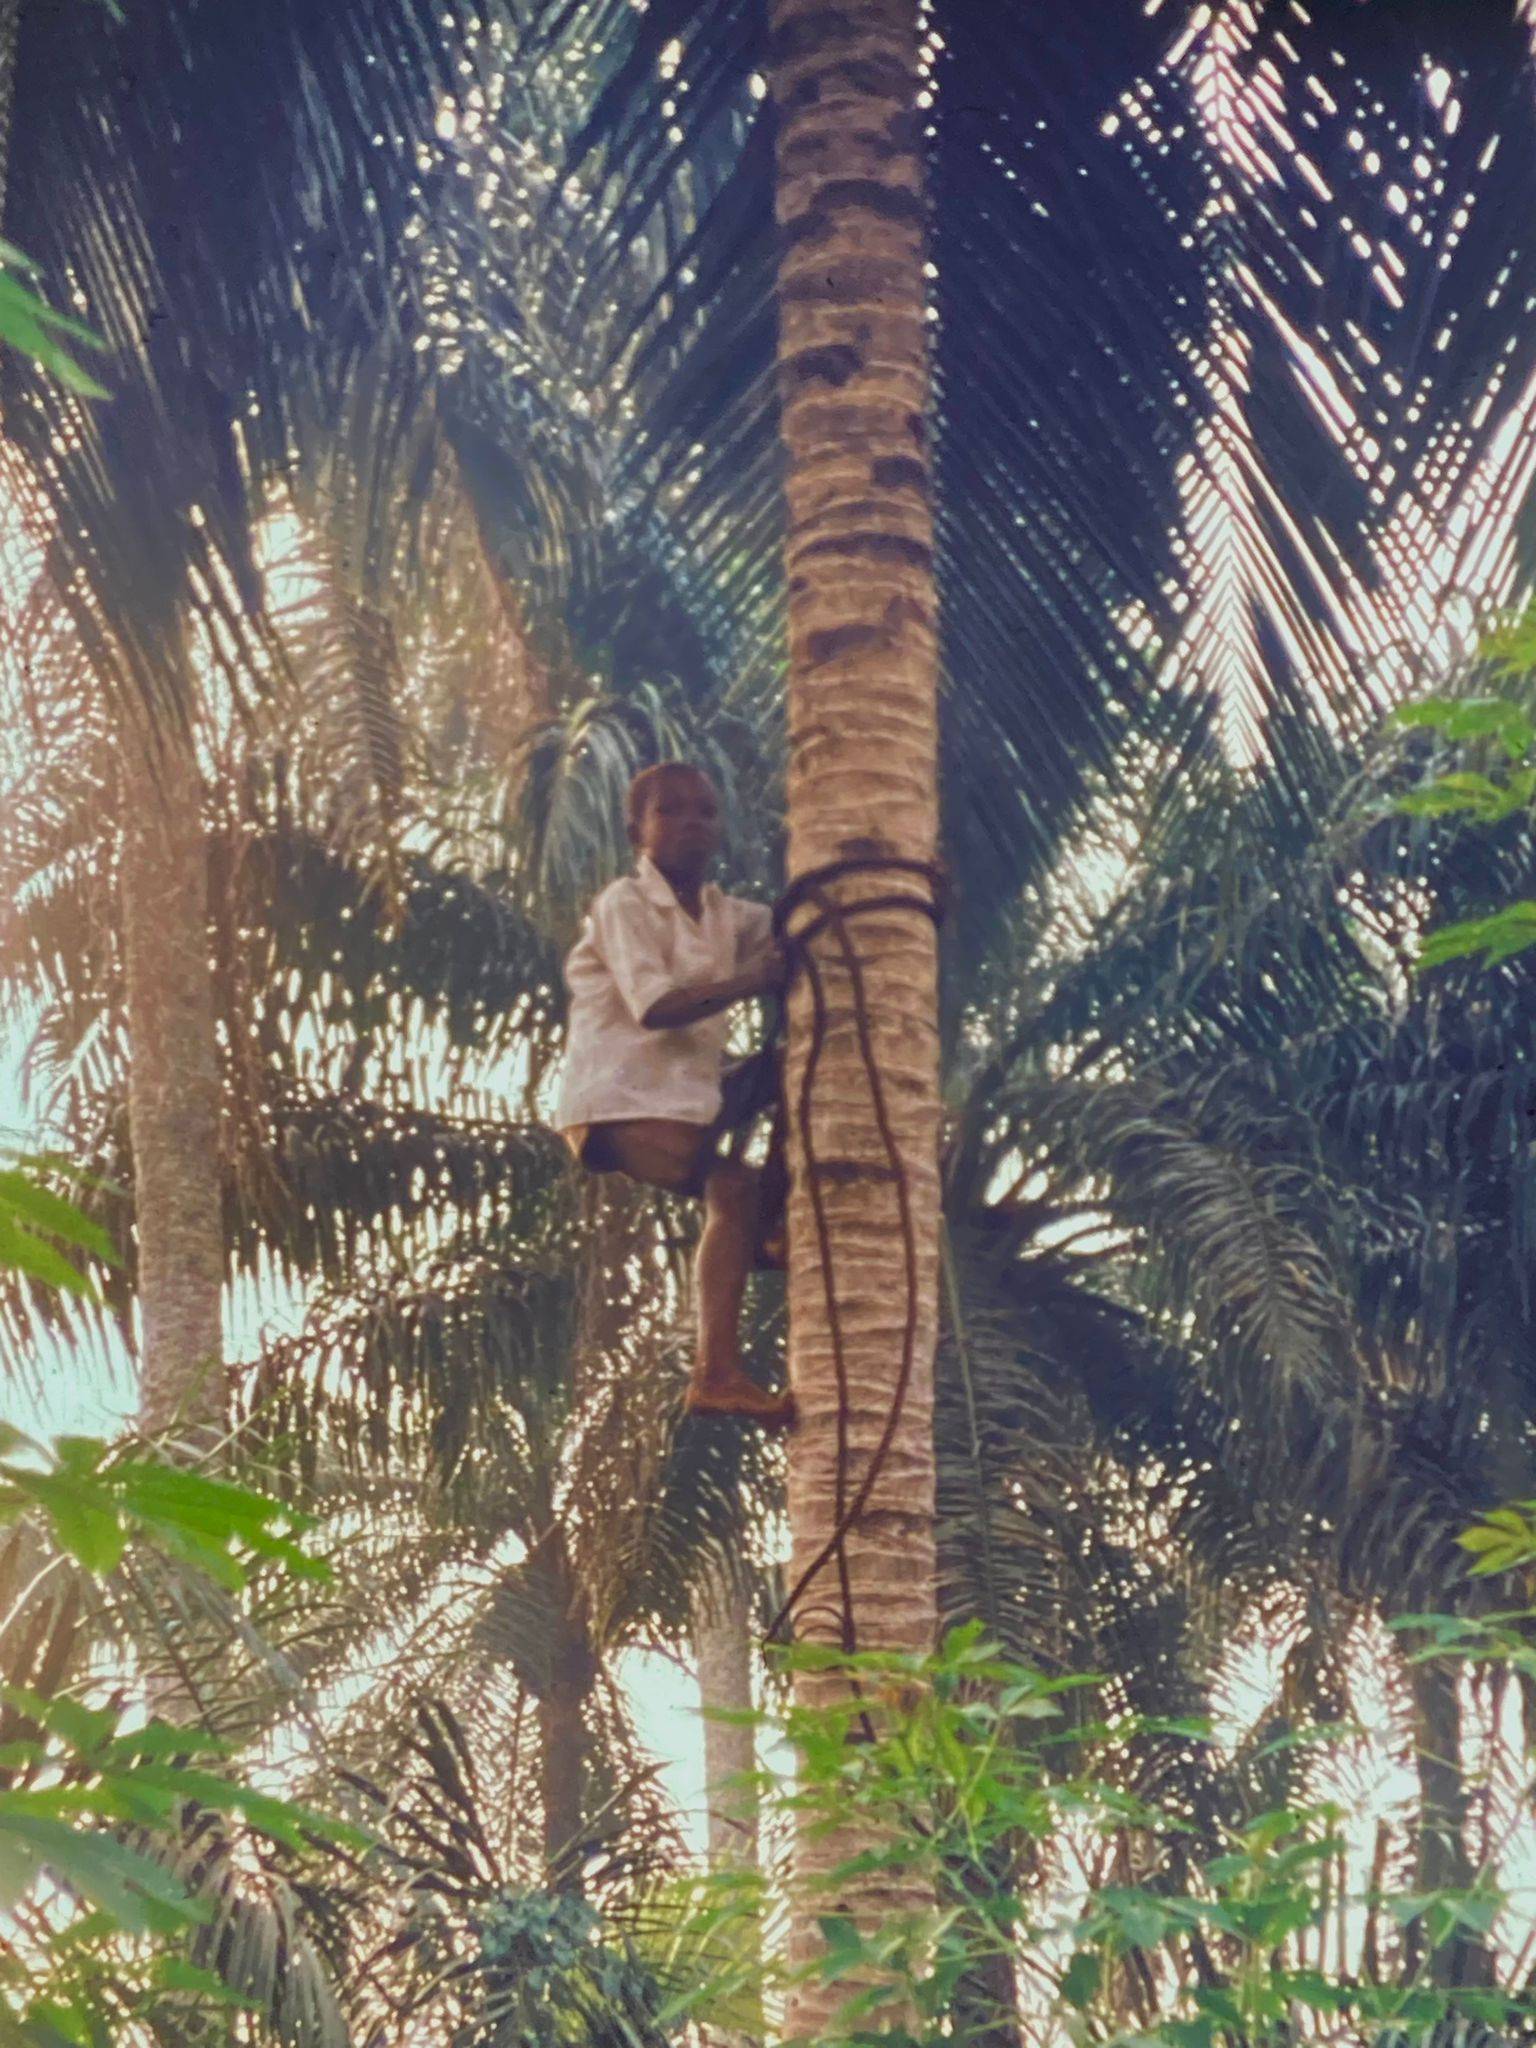 Mutiger Mann, der hoch auf einer Palme klettert, um Früchte mit einfachen Werkzeugen zu schneiden. Er ist bereits weit oben in der Palme.